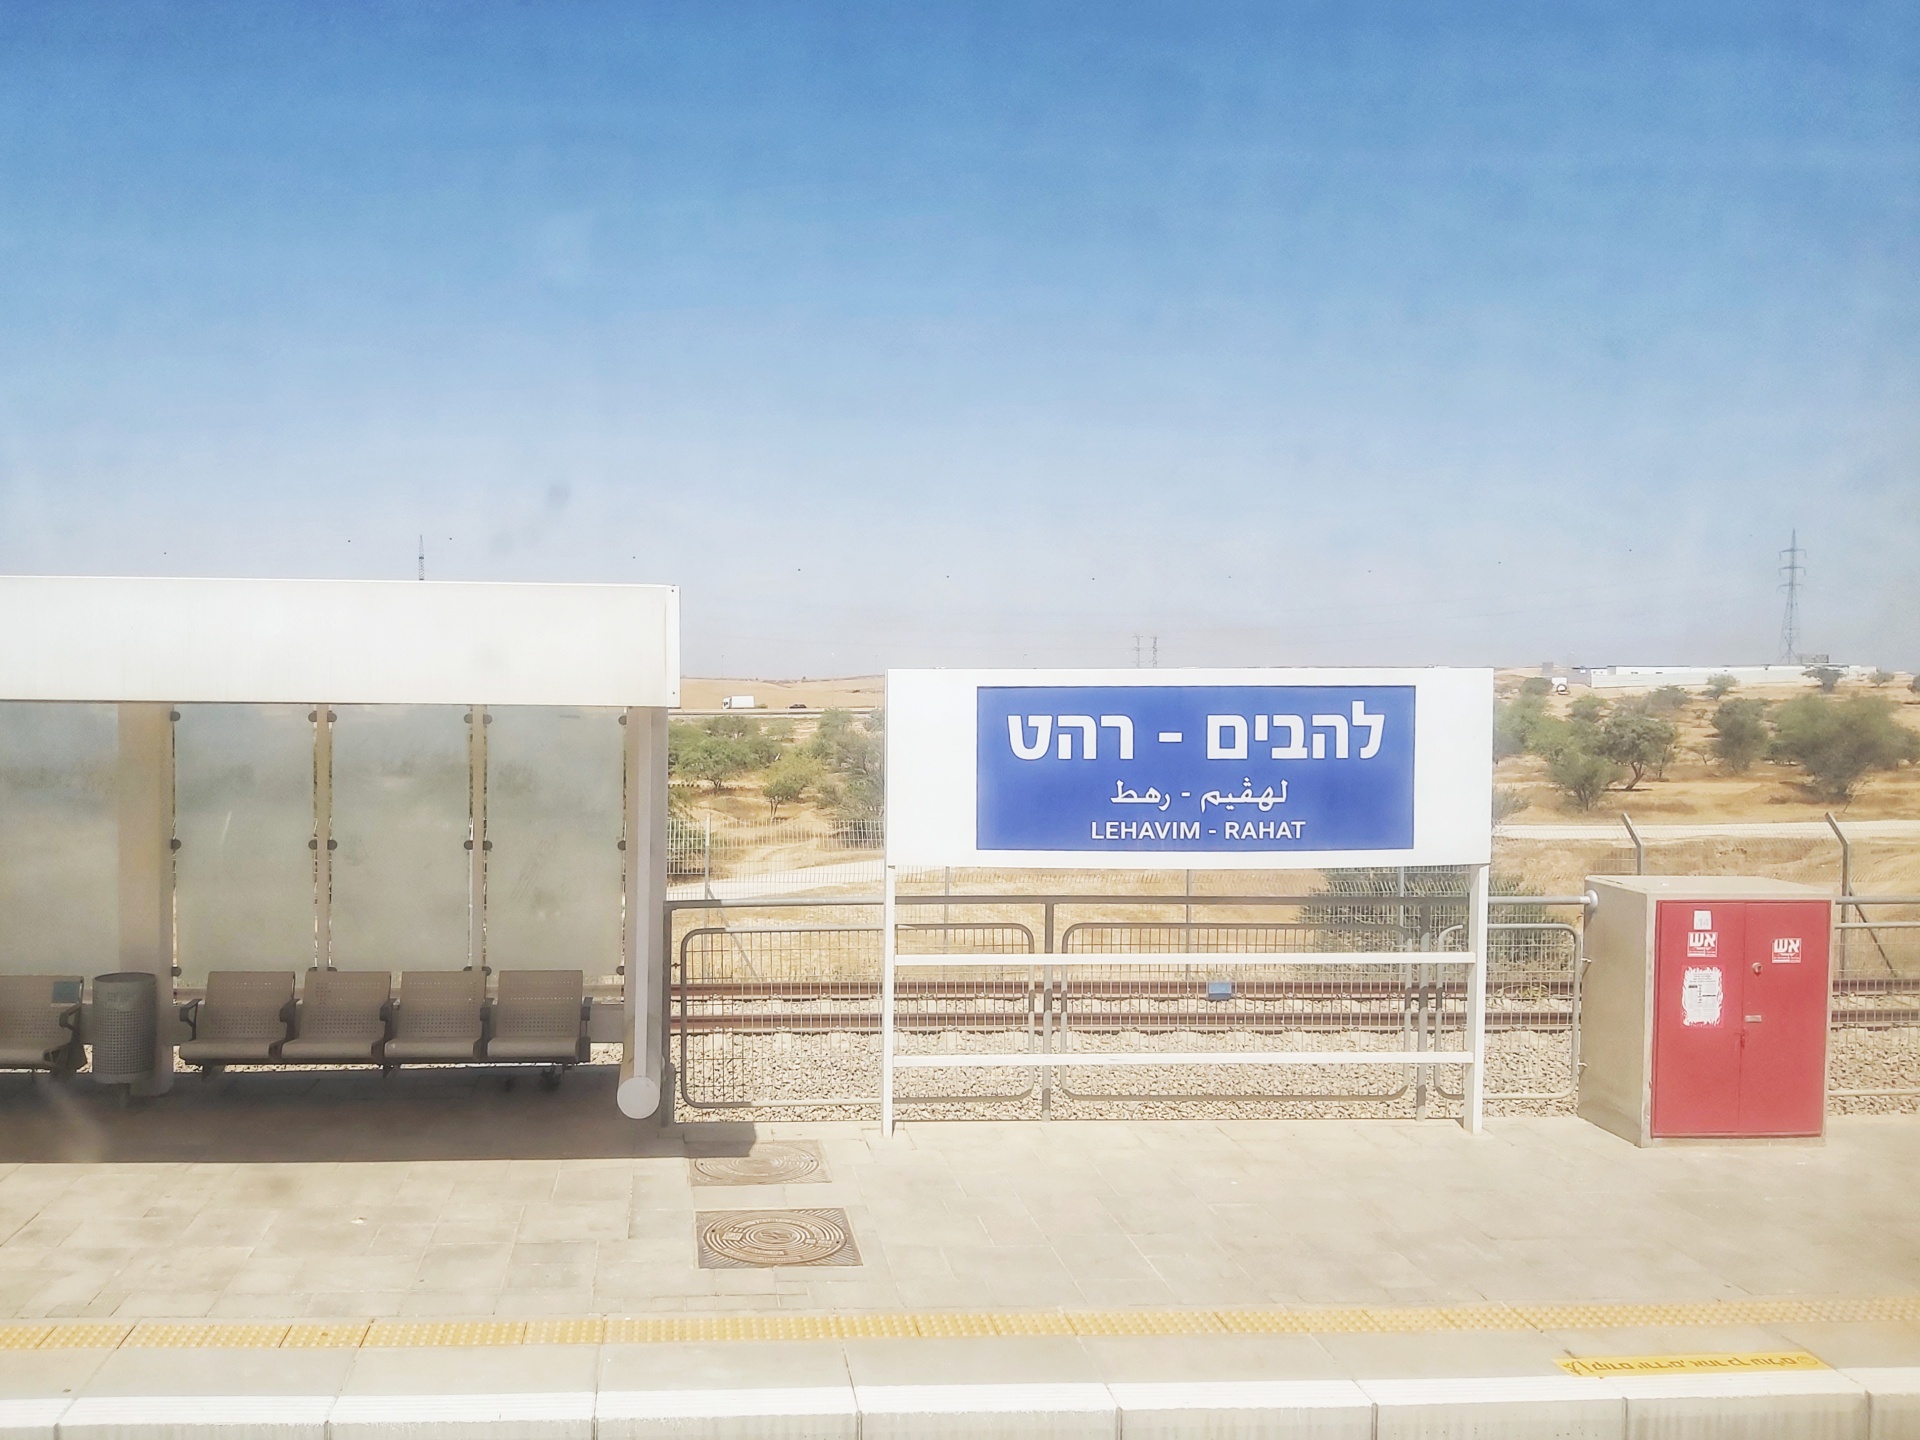 Stazione ferroviaria di Rahat, Israele